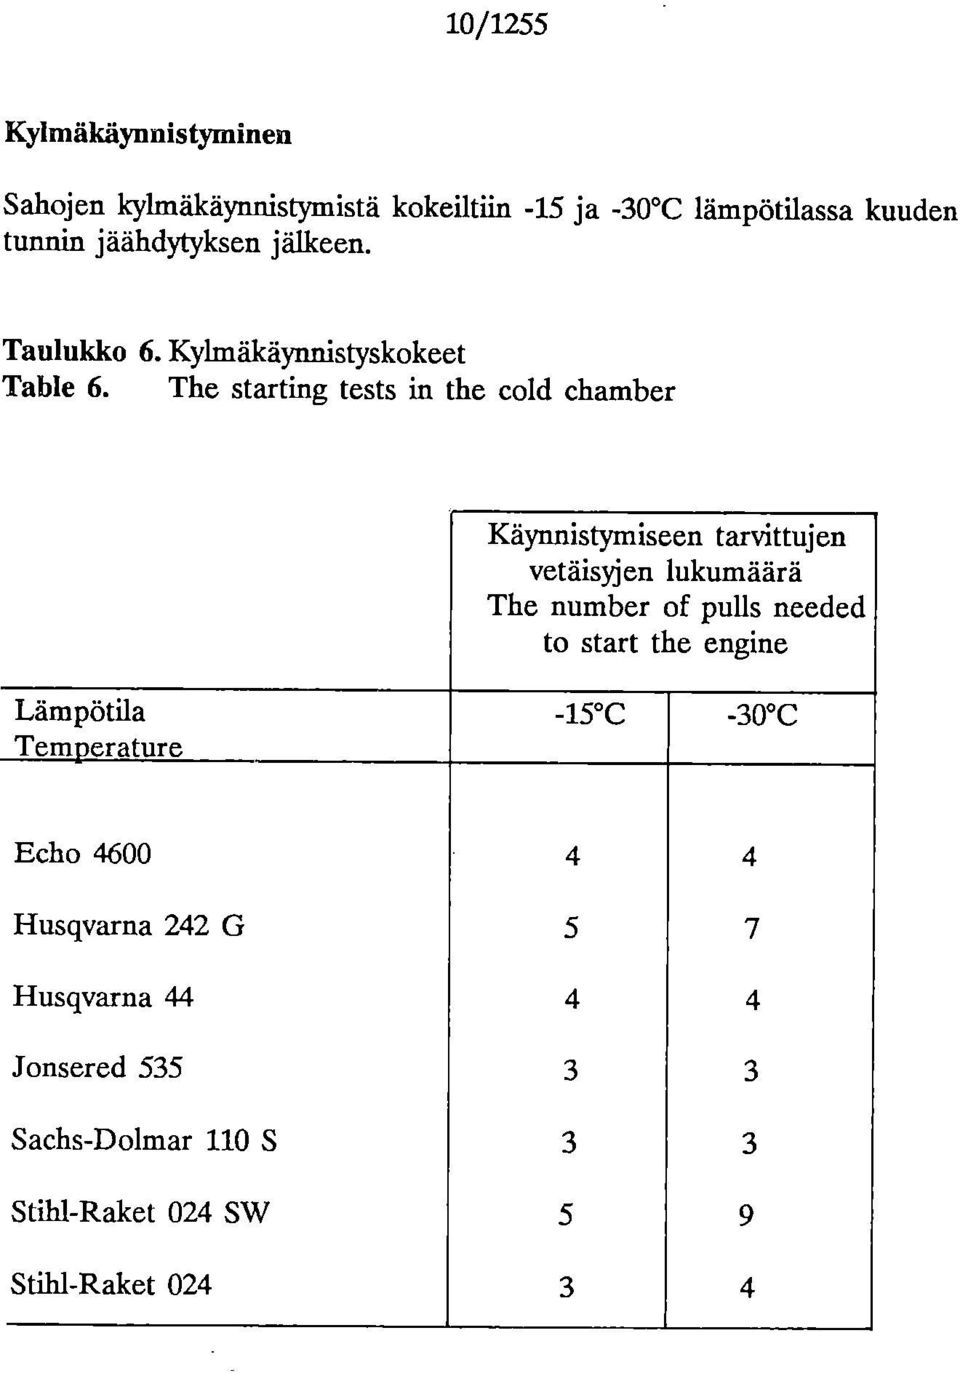 The starting tests in the cld chamber Käynnistymiseen tarvittujen vetäisyjen lukumäärä The number f pulls needed t